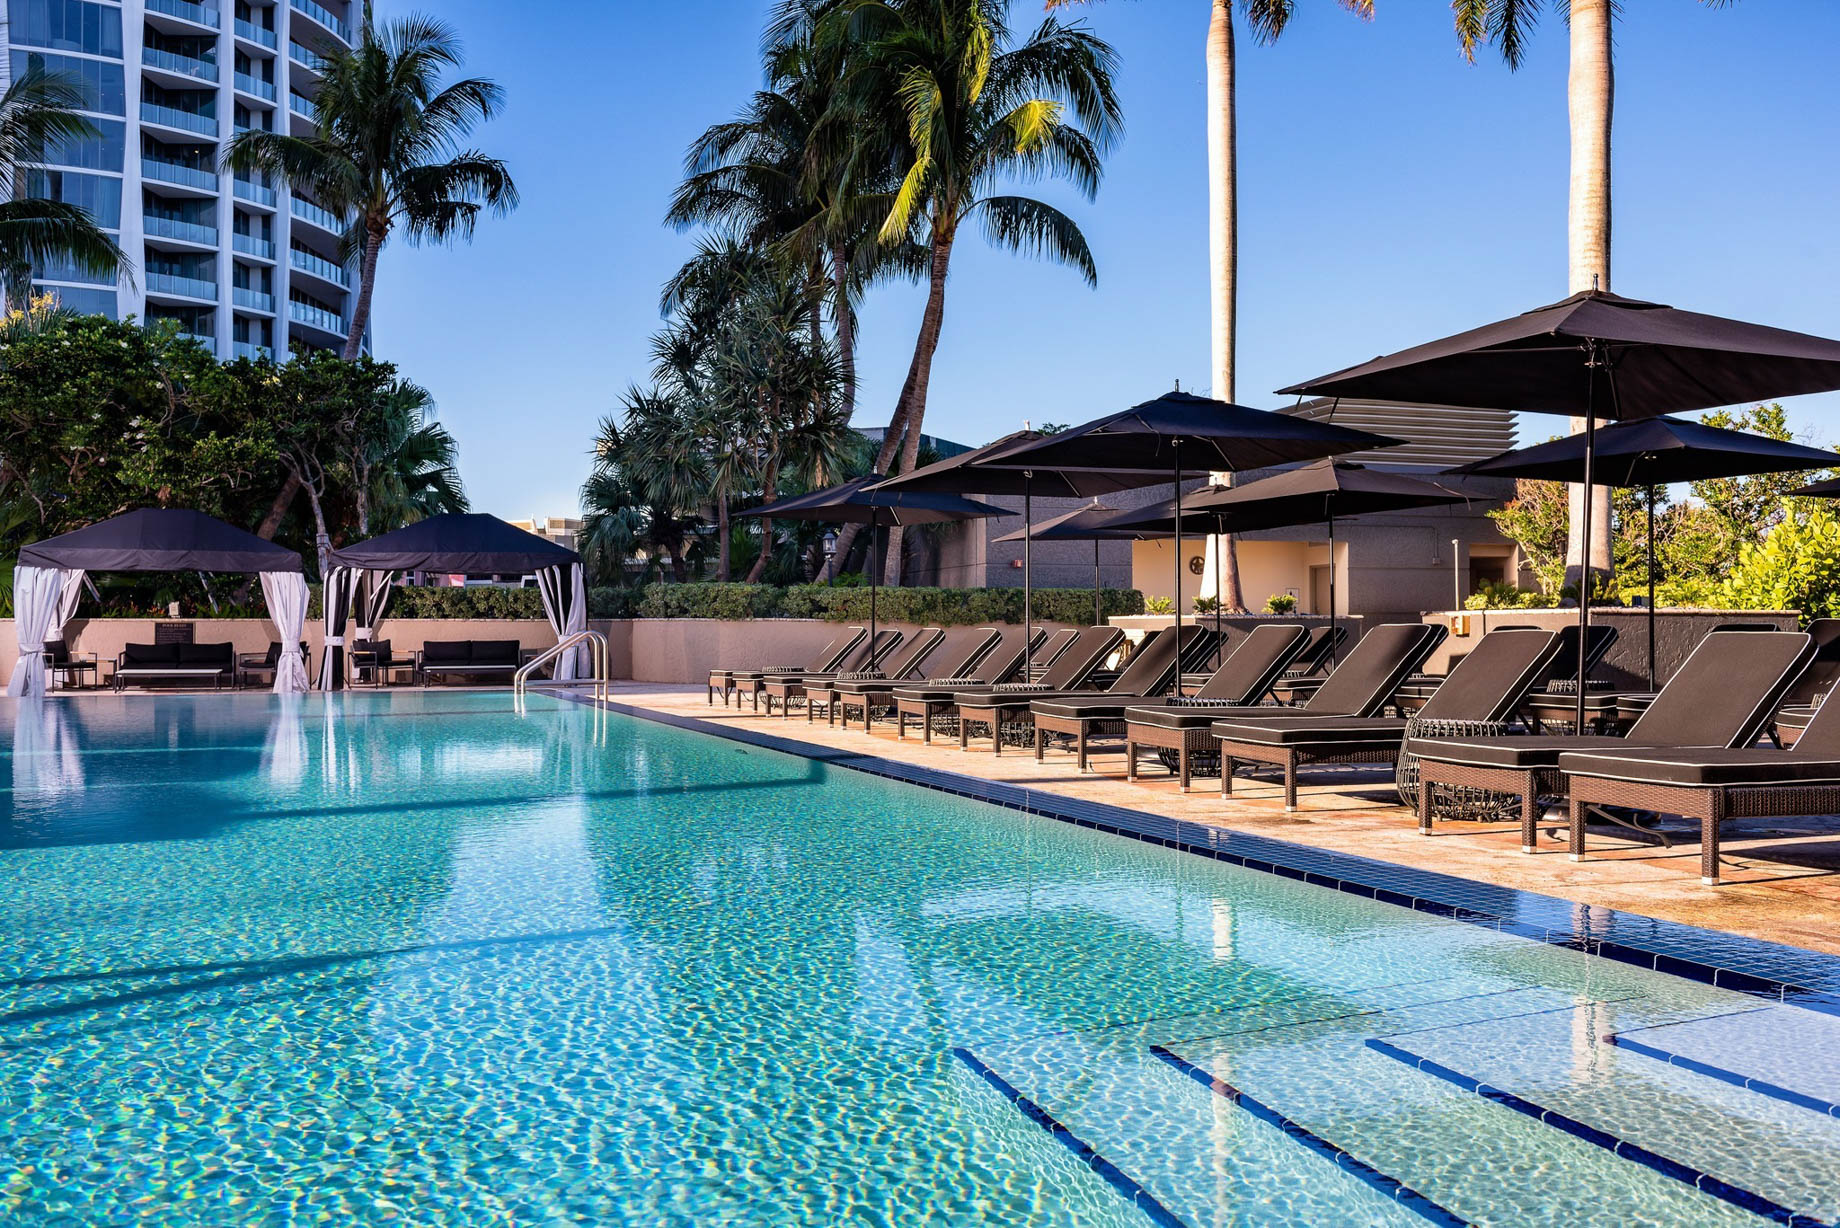 The Ritz-Carlton Coconut Grove, Miami Hotel – Miami, FL, USA – Exterior Pool Deck Chairs